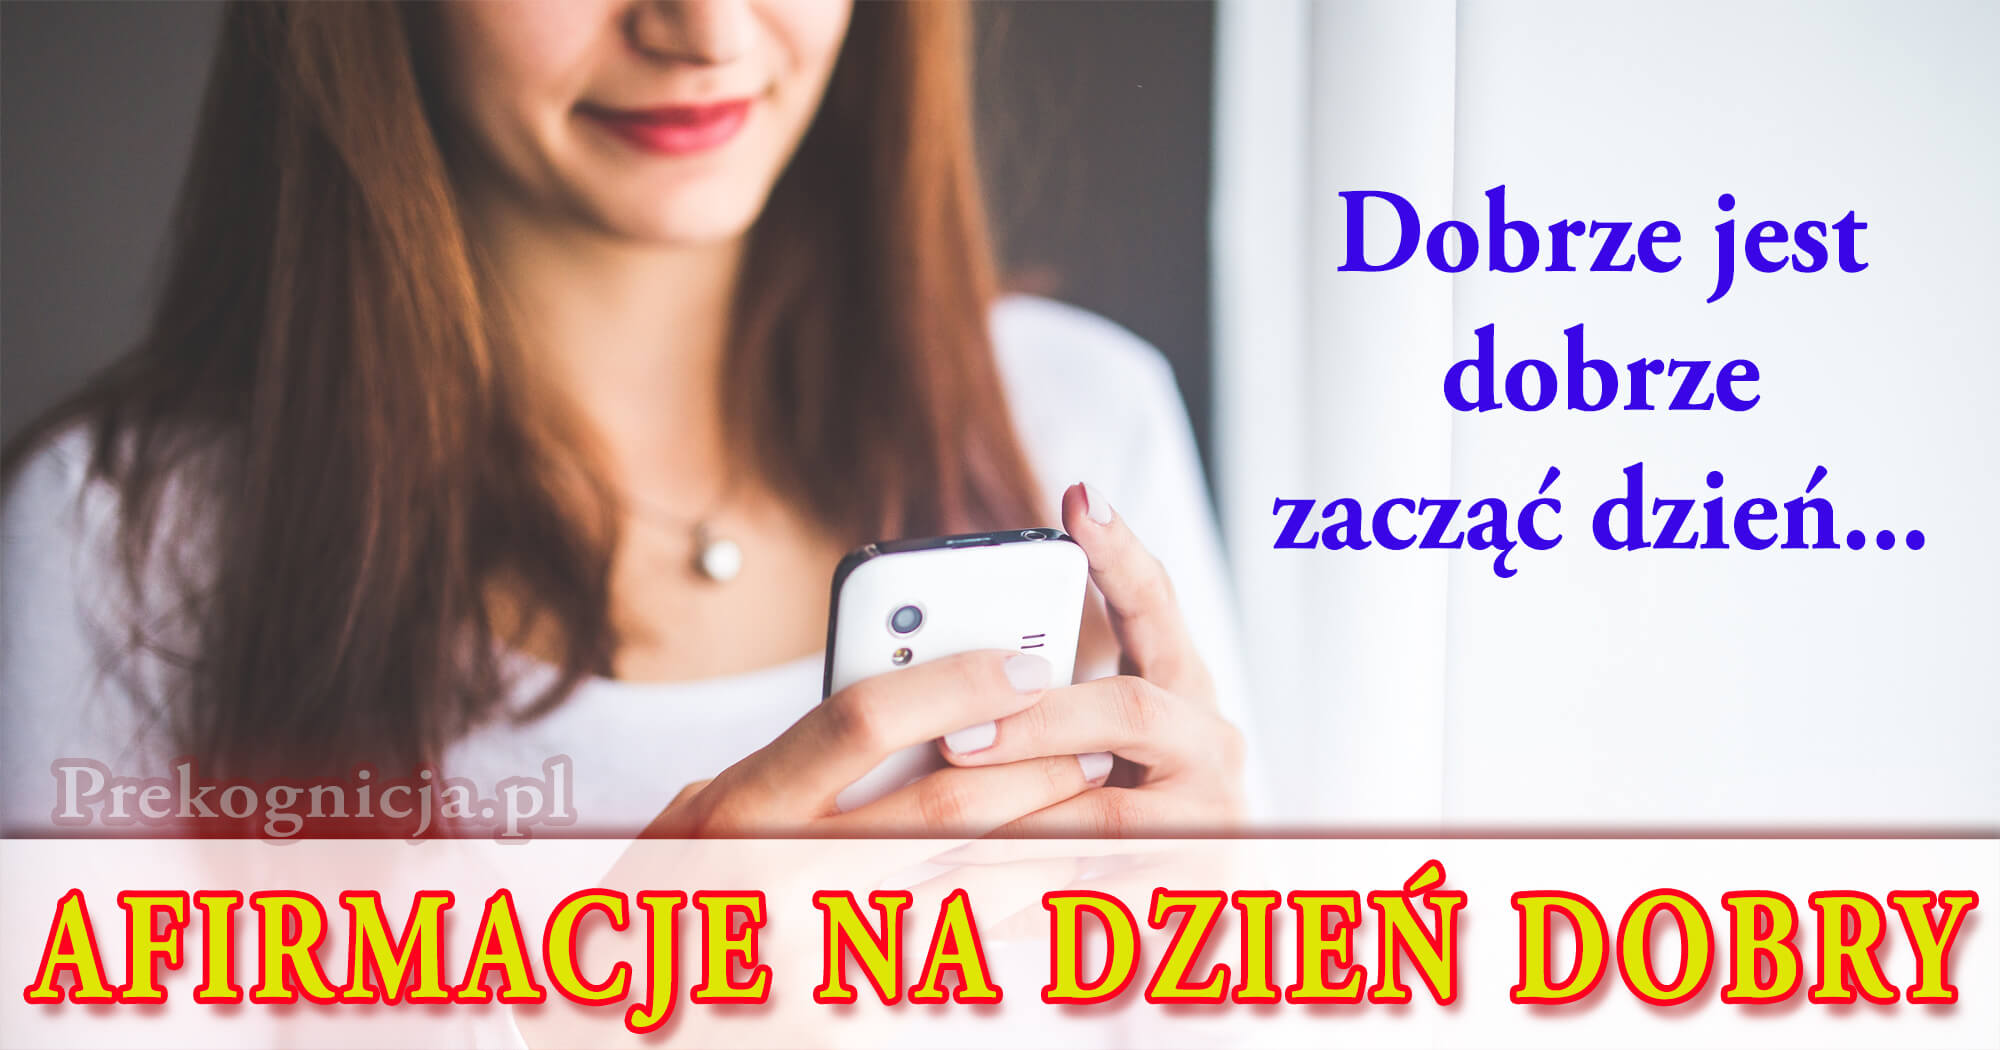 Afirmacje na Dzień Dobry 2018 (afirmacje na telefon) - Prekognicja.pl